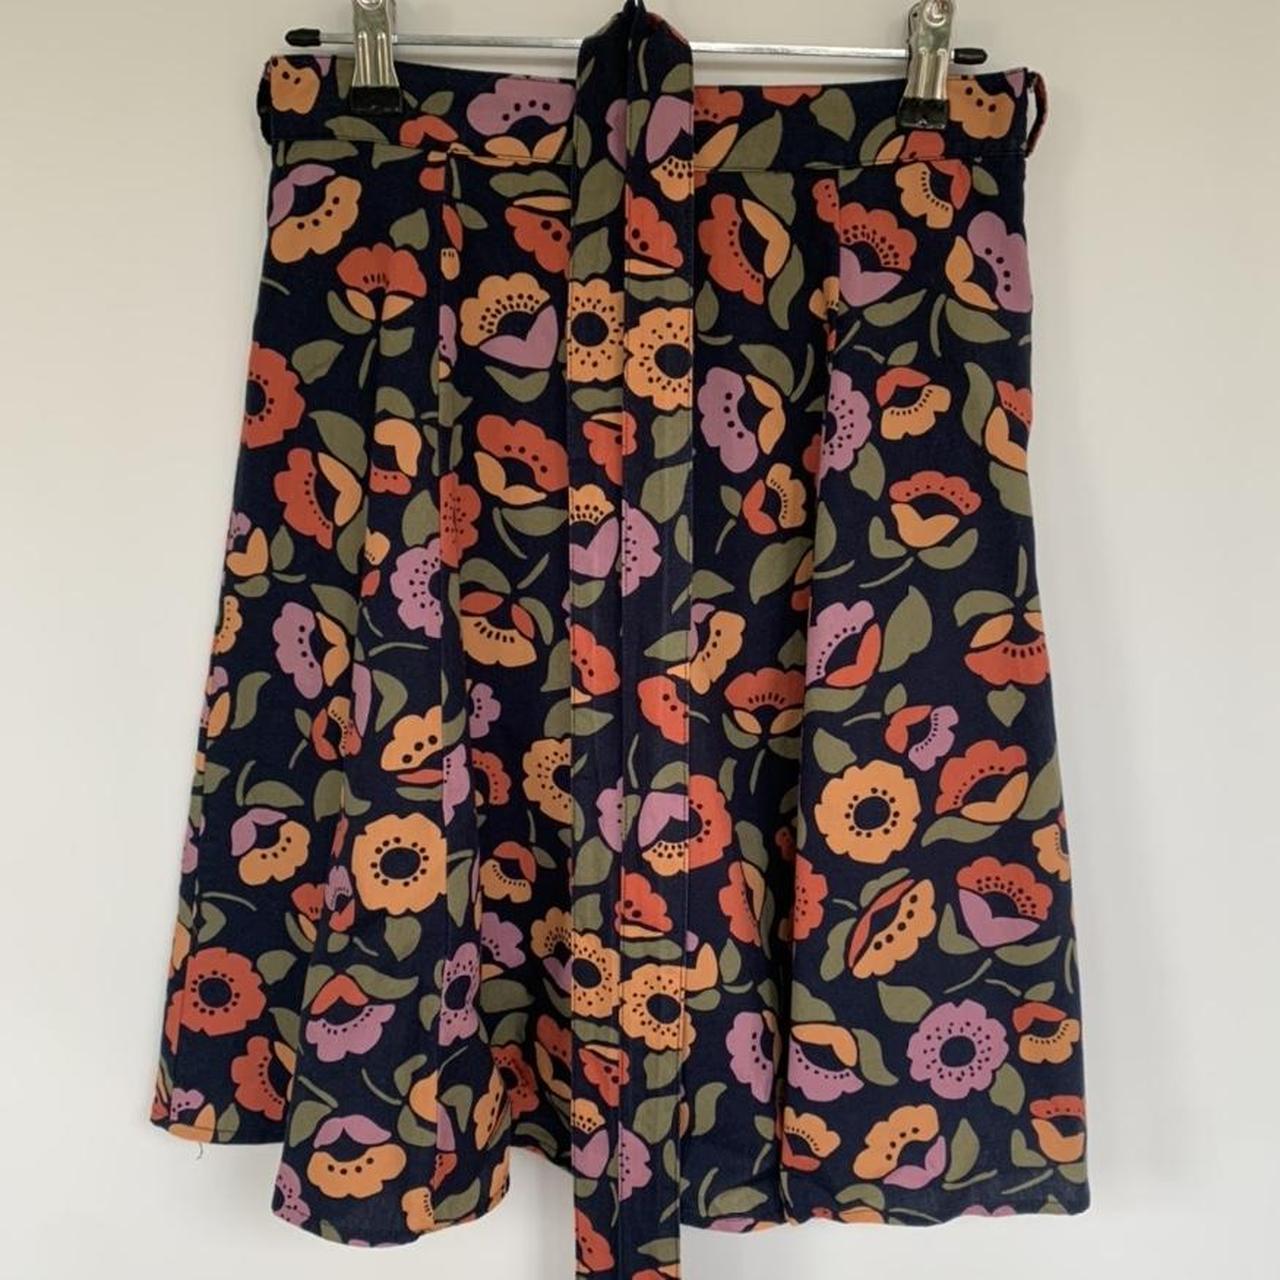 Princess Highway size 8 floral patterned skirt. Has... - Depop